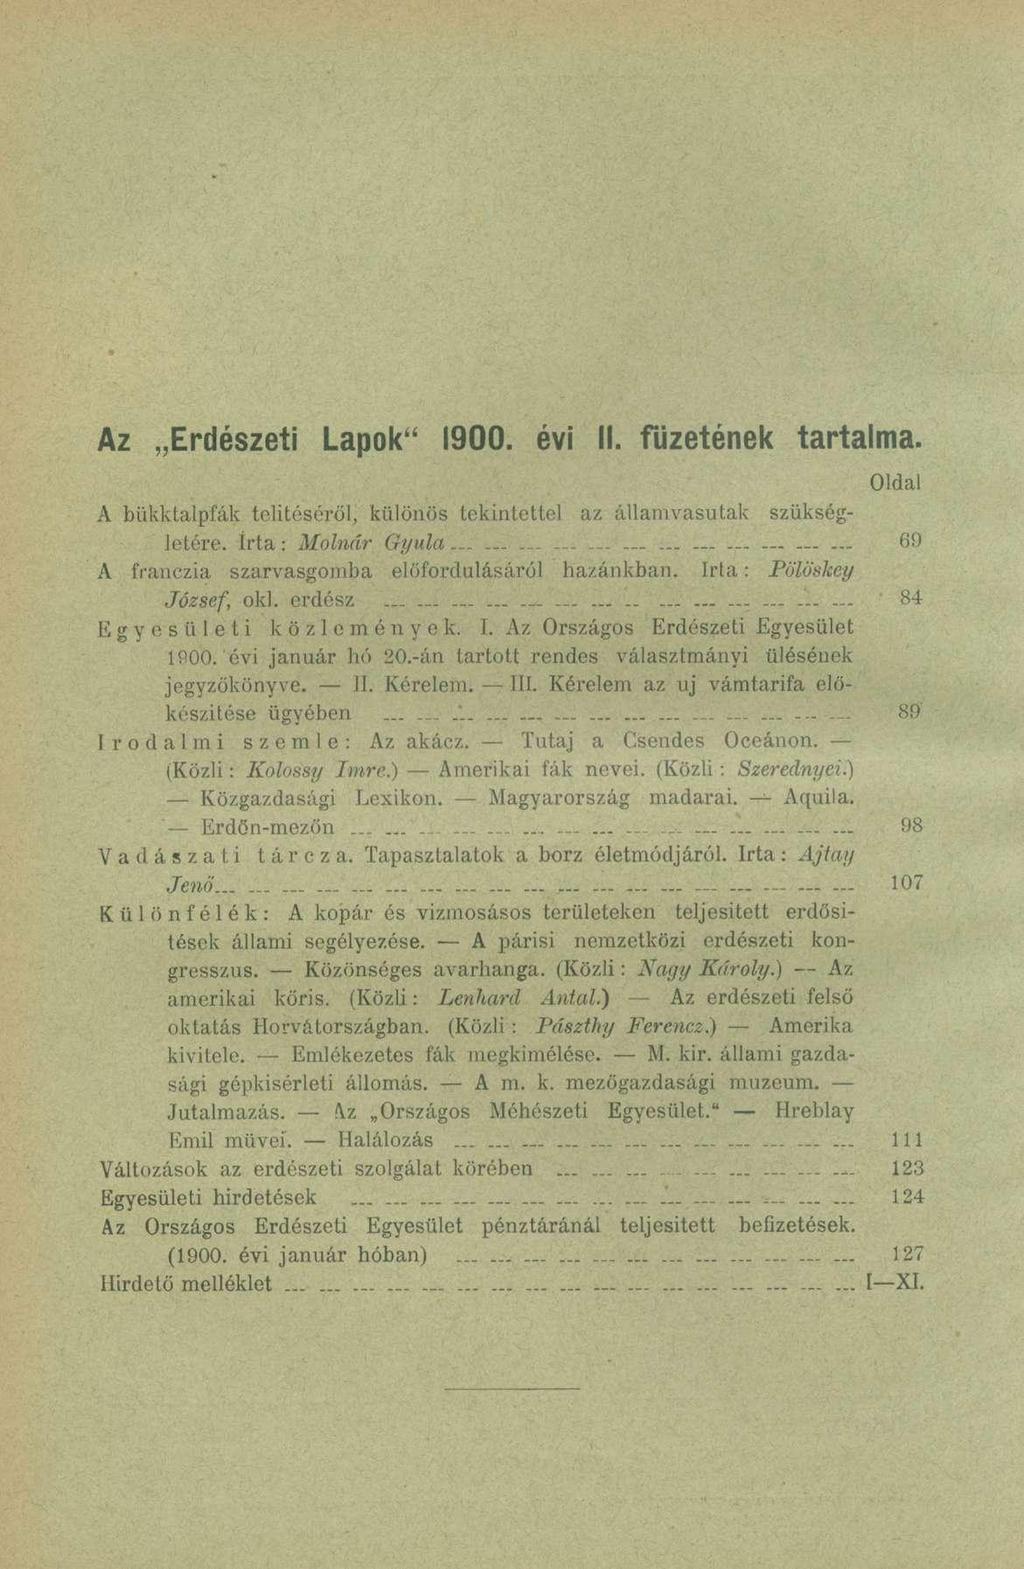 Az Erdészeti Lapok" 1900. évi II. füzetének tartalma. Oldal A bükktalpfák telítéséről, különös tekintettel az államvasutak szükségletére, írta: Molnár Gyula.